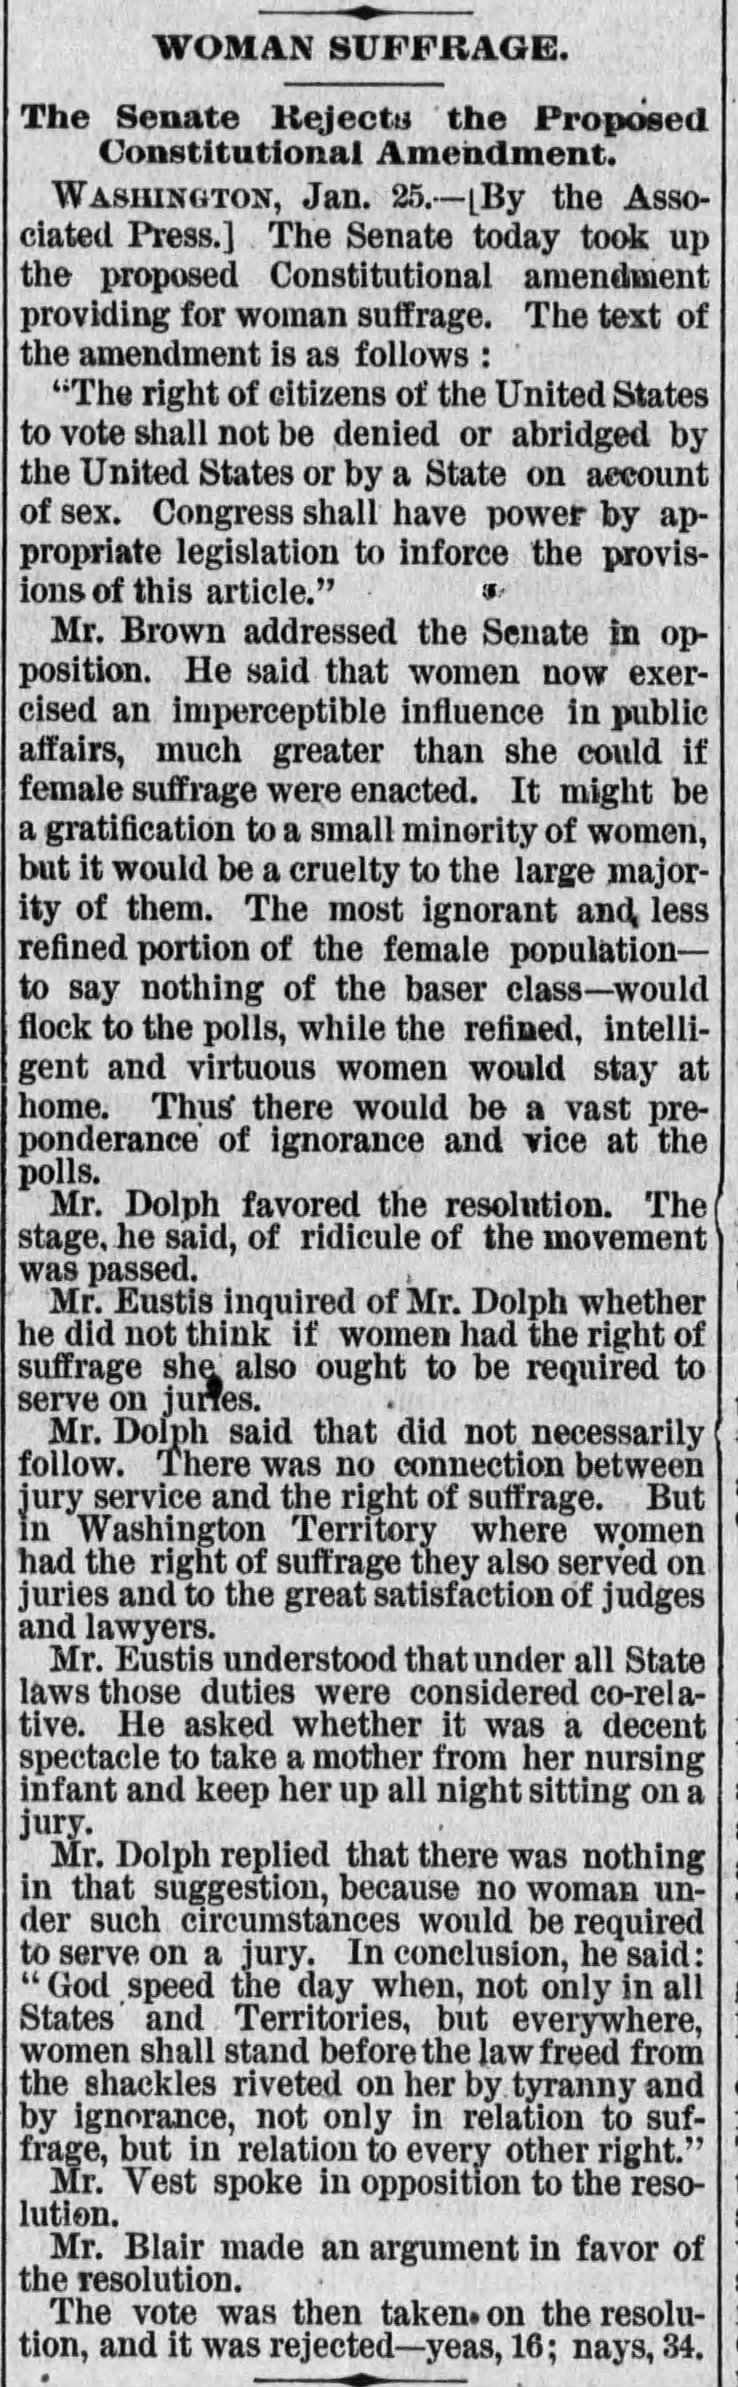 U.S. Senate rejects proposed federal women's suffrage amendment in 1887